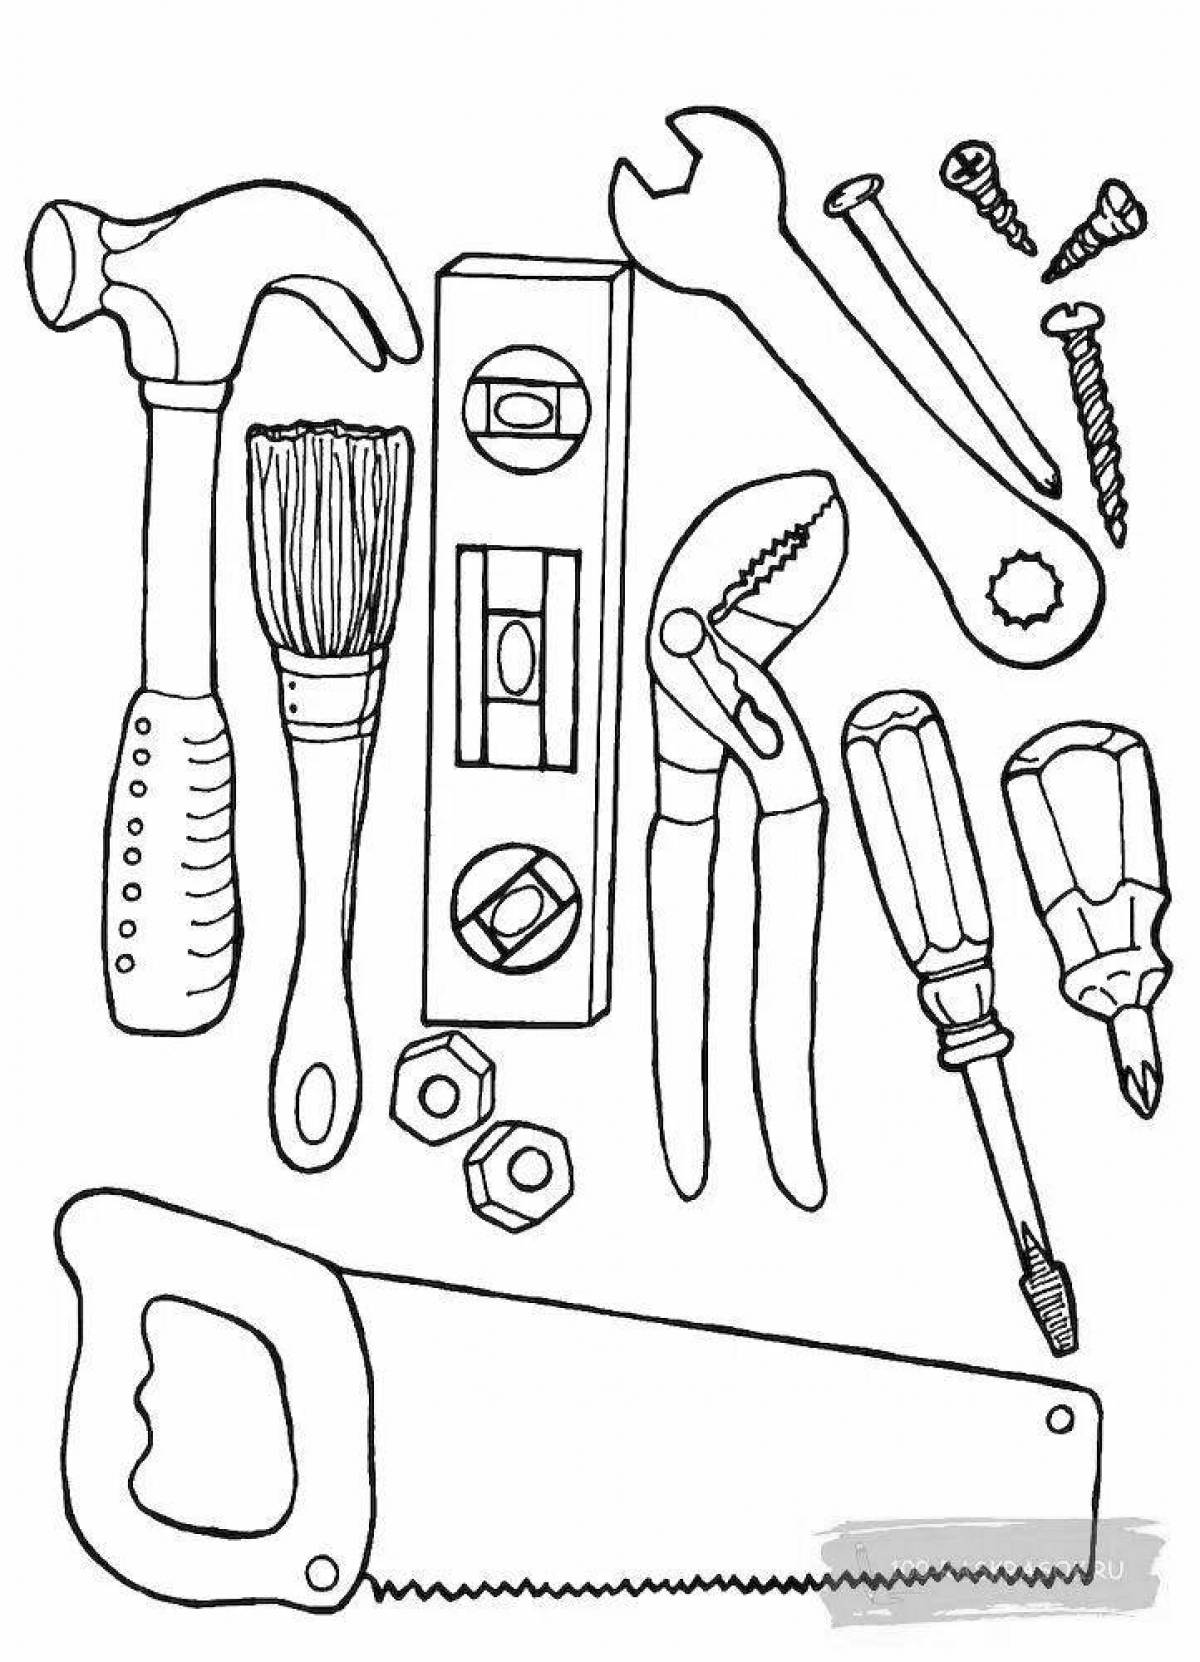 Coloring tools. Tools инструменты для детей 5in1. Раскраска инструменты. Раскраски инструменты строительные. Инструменты раскраска для детей.